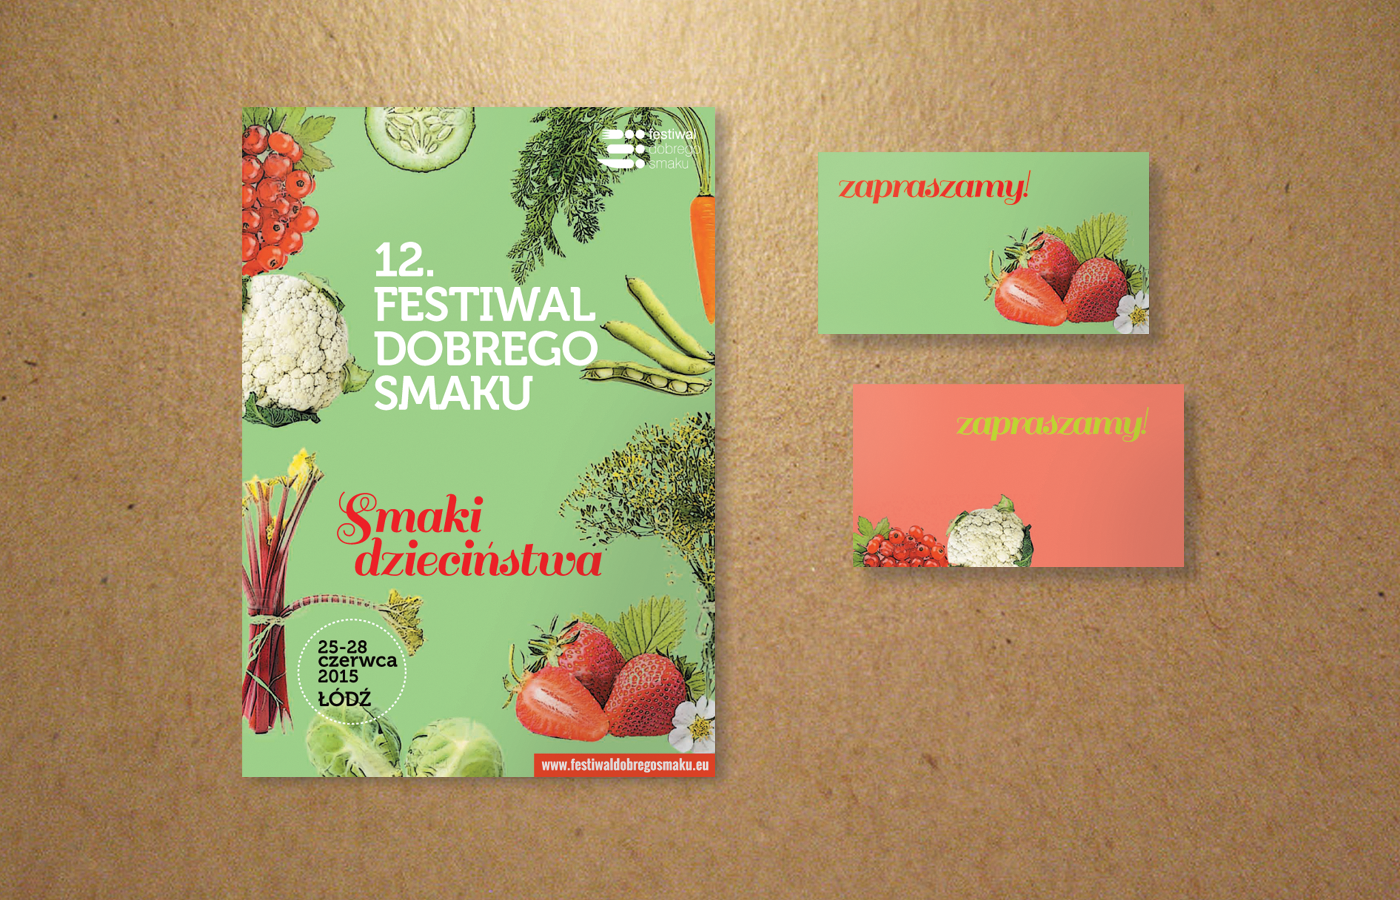 Food  branding  festival eat colorful vintage poster